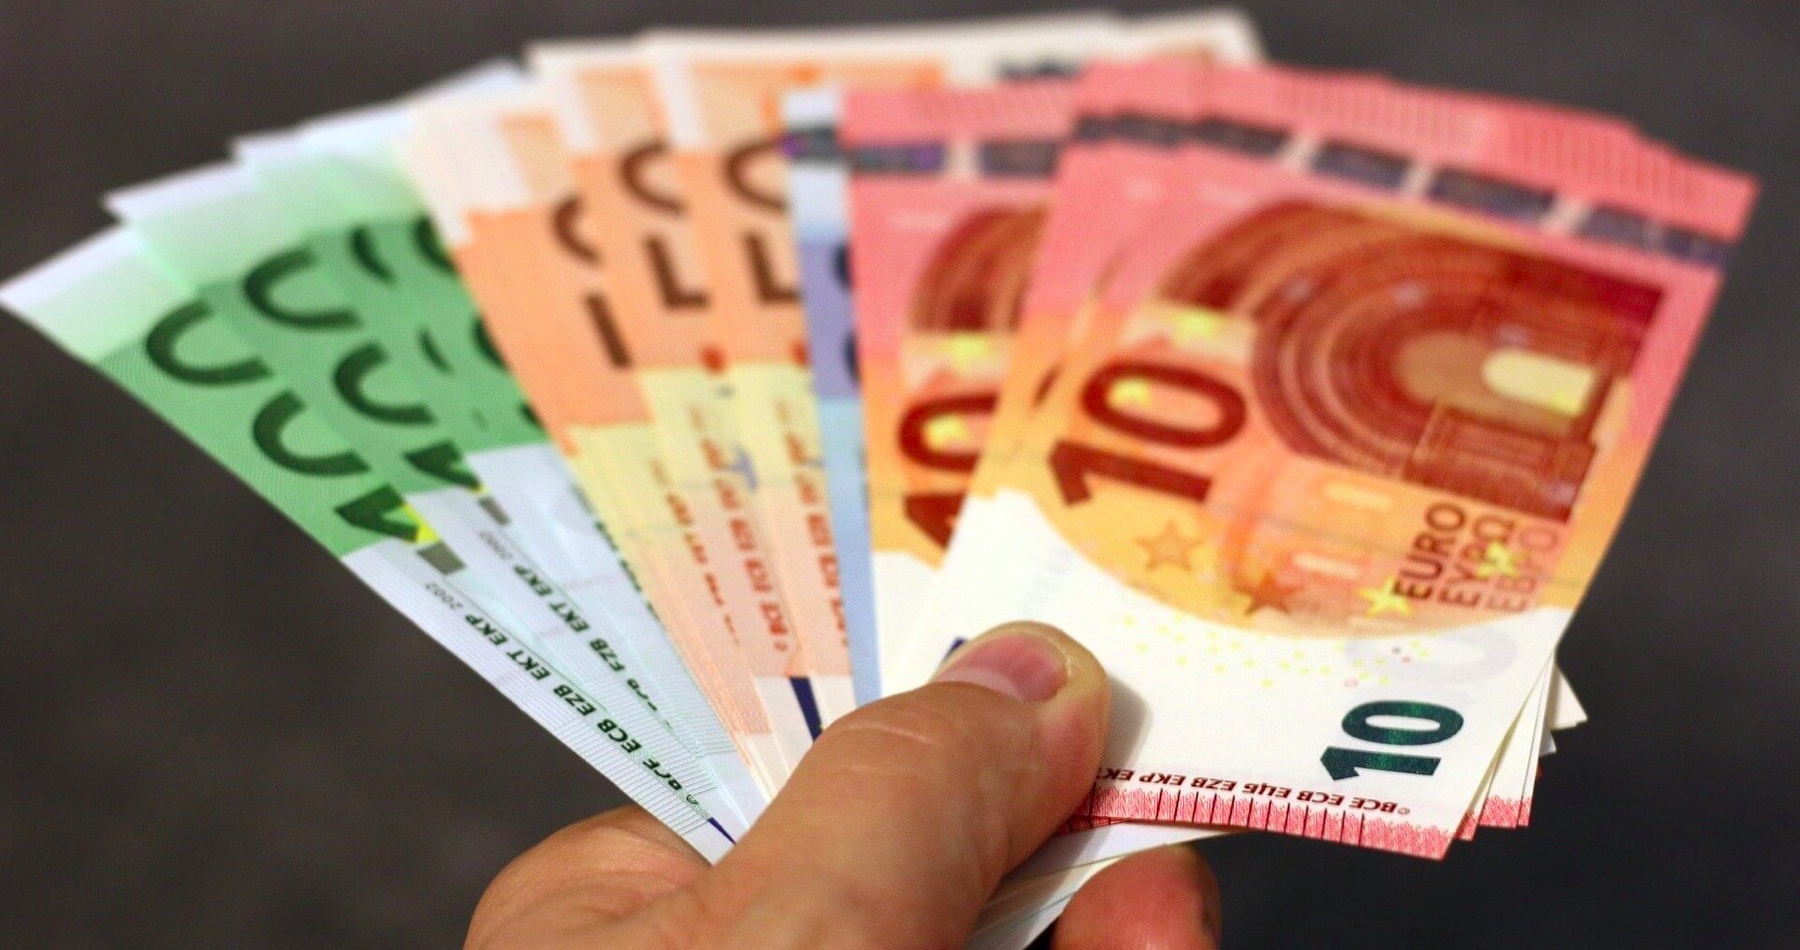 Slovensko má najnižšie platy z V4. V Nemecku je priemerná mzda 4130 eur. Vyššiu priemernú mzdu ako Slováci majú Chorváti, Rumuni a všetky pobaltské štáty